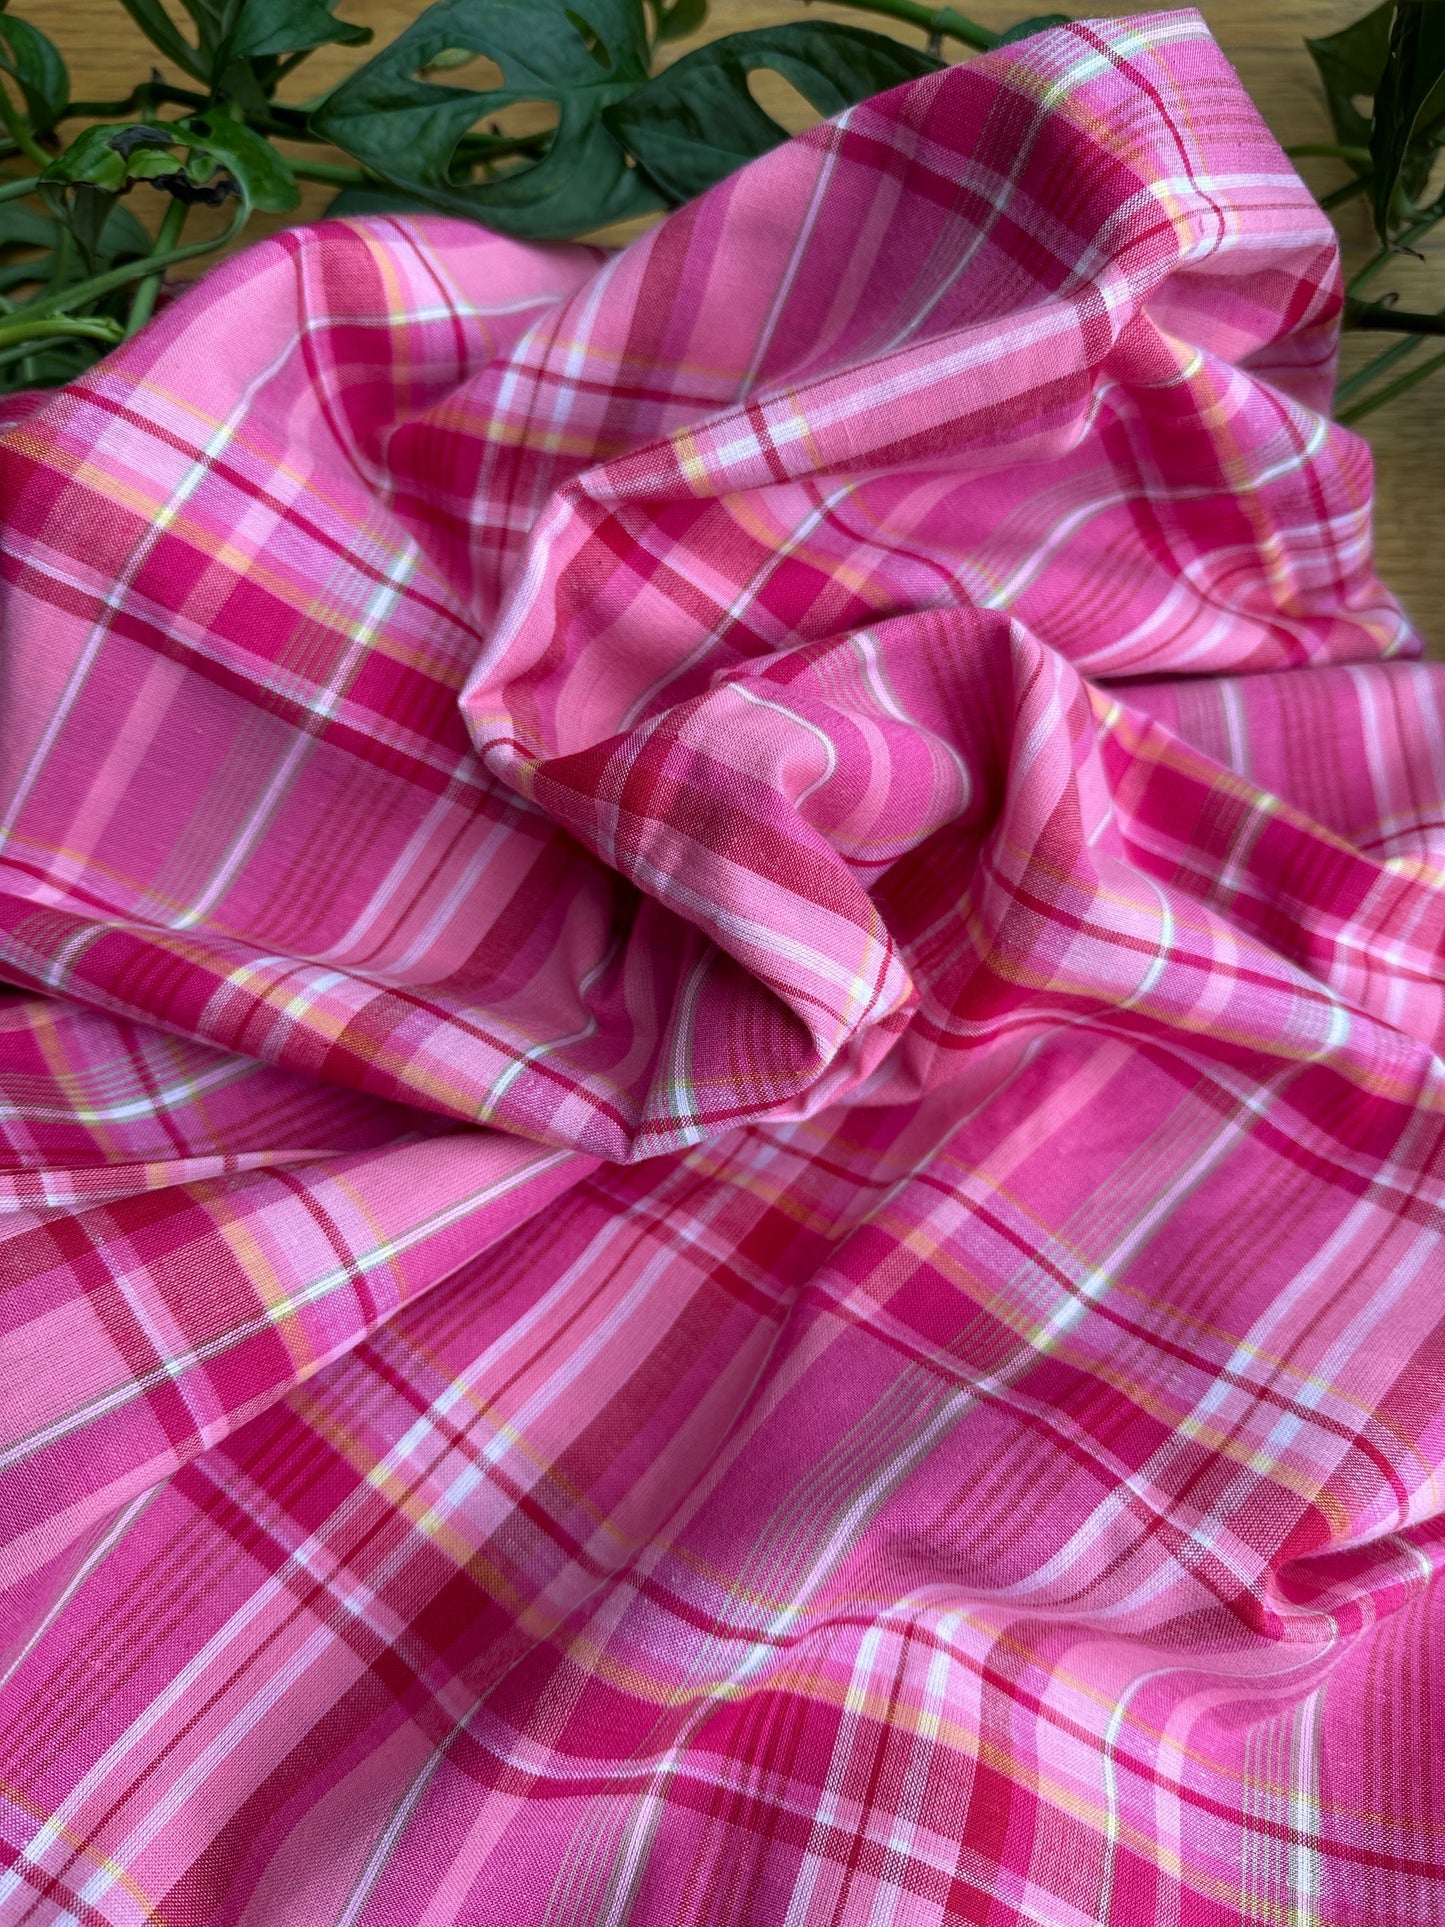 Couverture bébé "Goyave" en madras rose